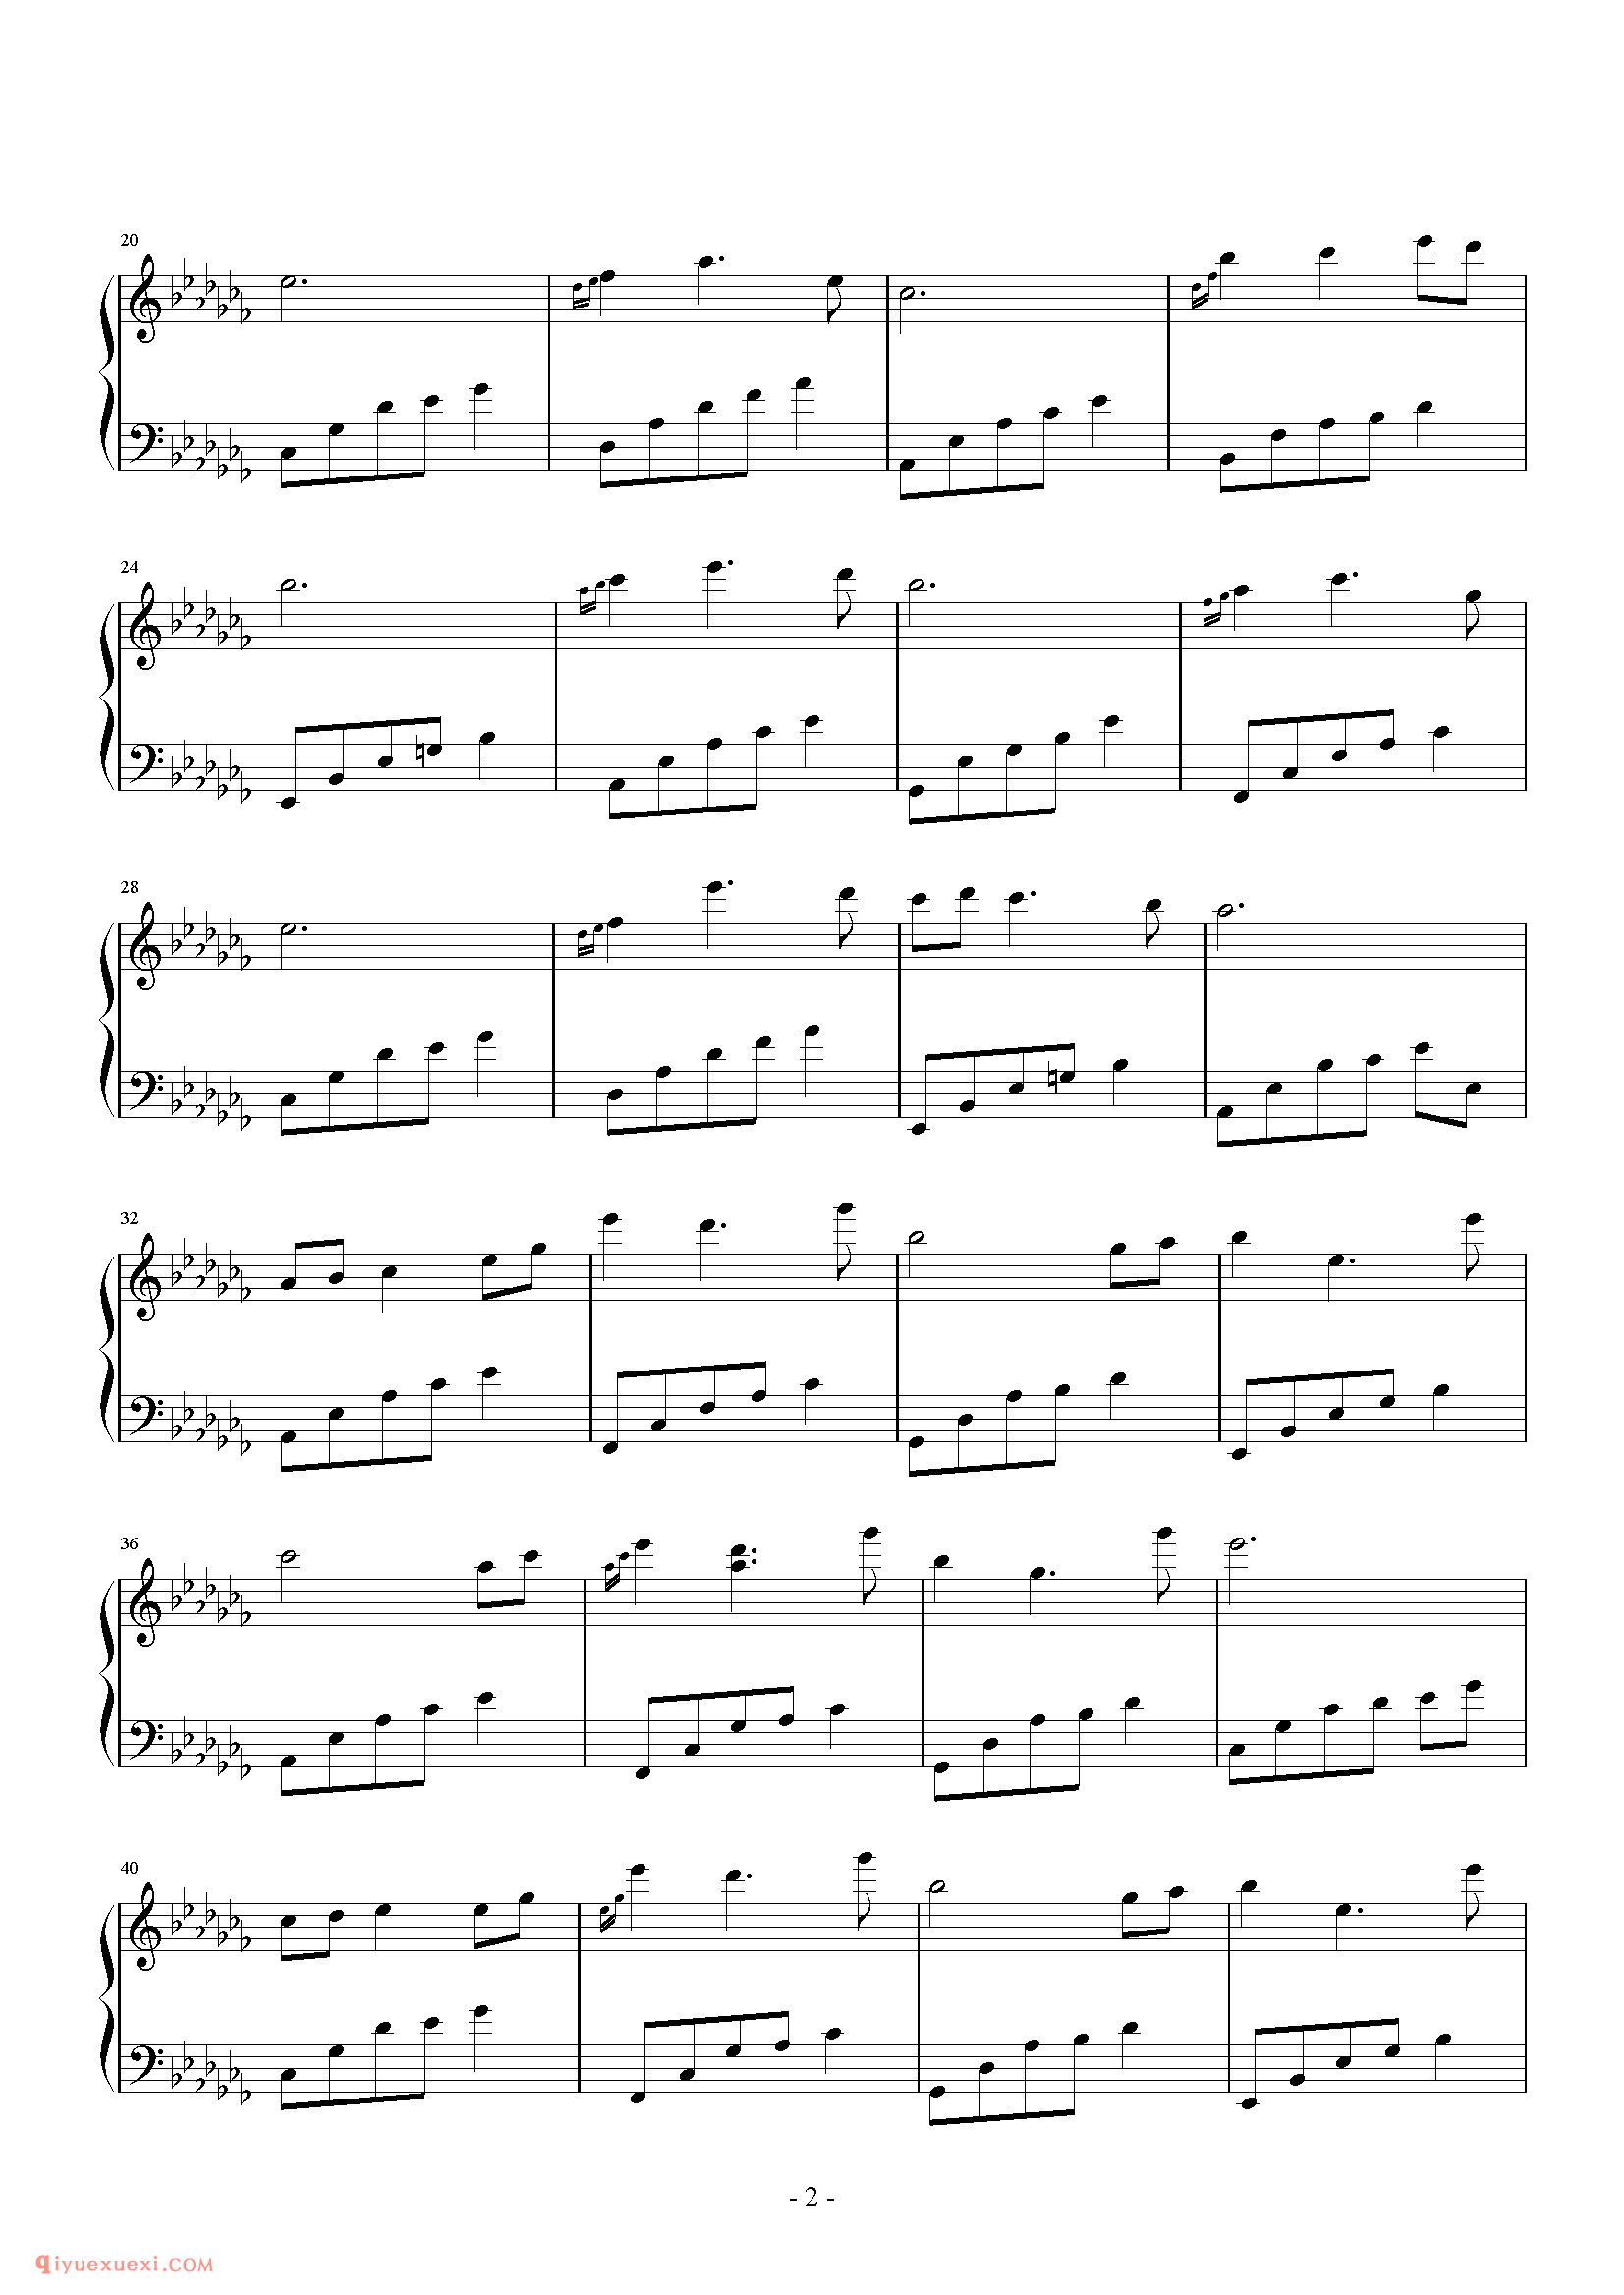 石进《夜的钢琴曲》第24首_石进夜的钢琴曲(24)五线谱